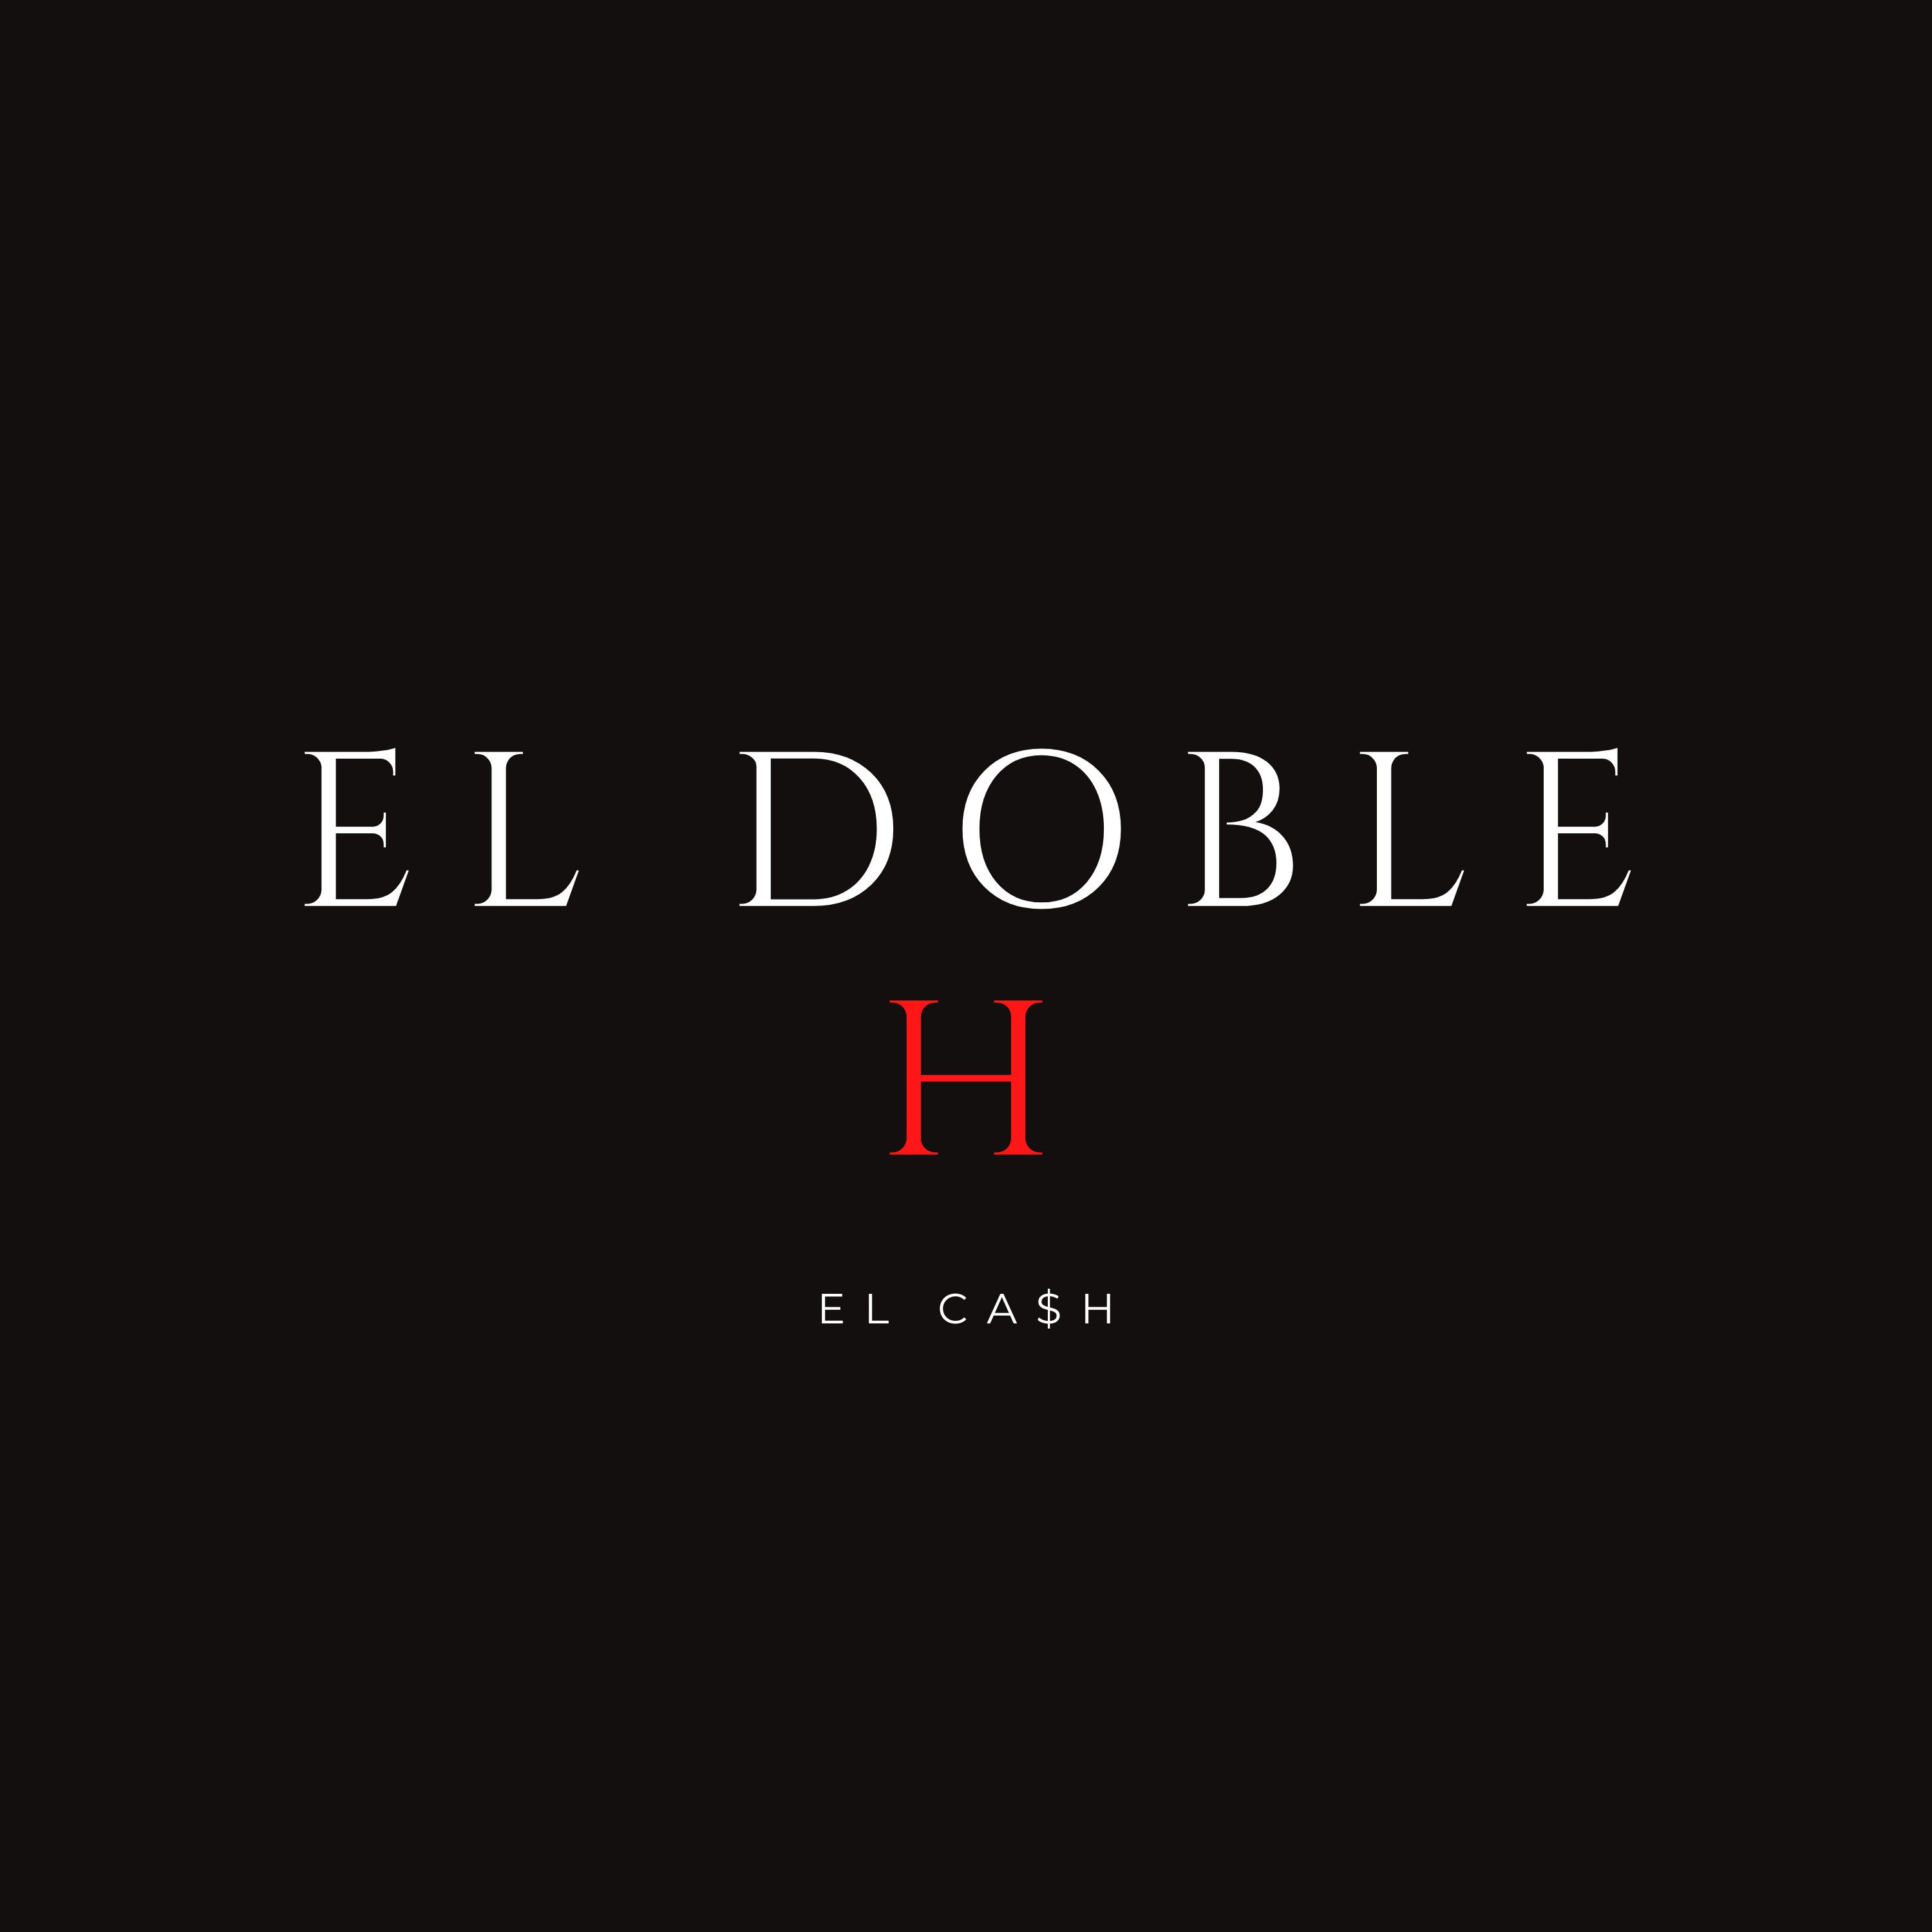 El Ca$h - El Doble H